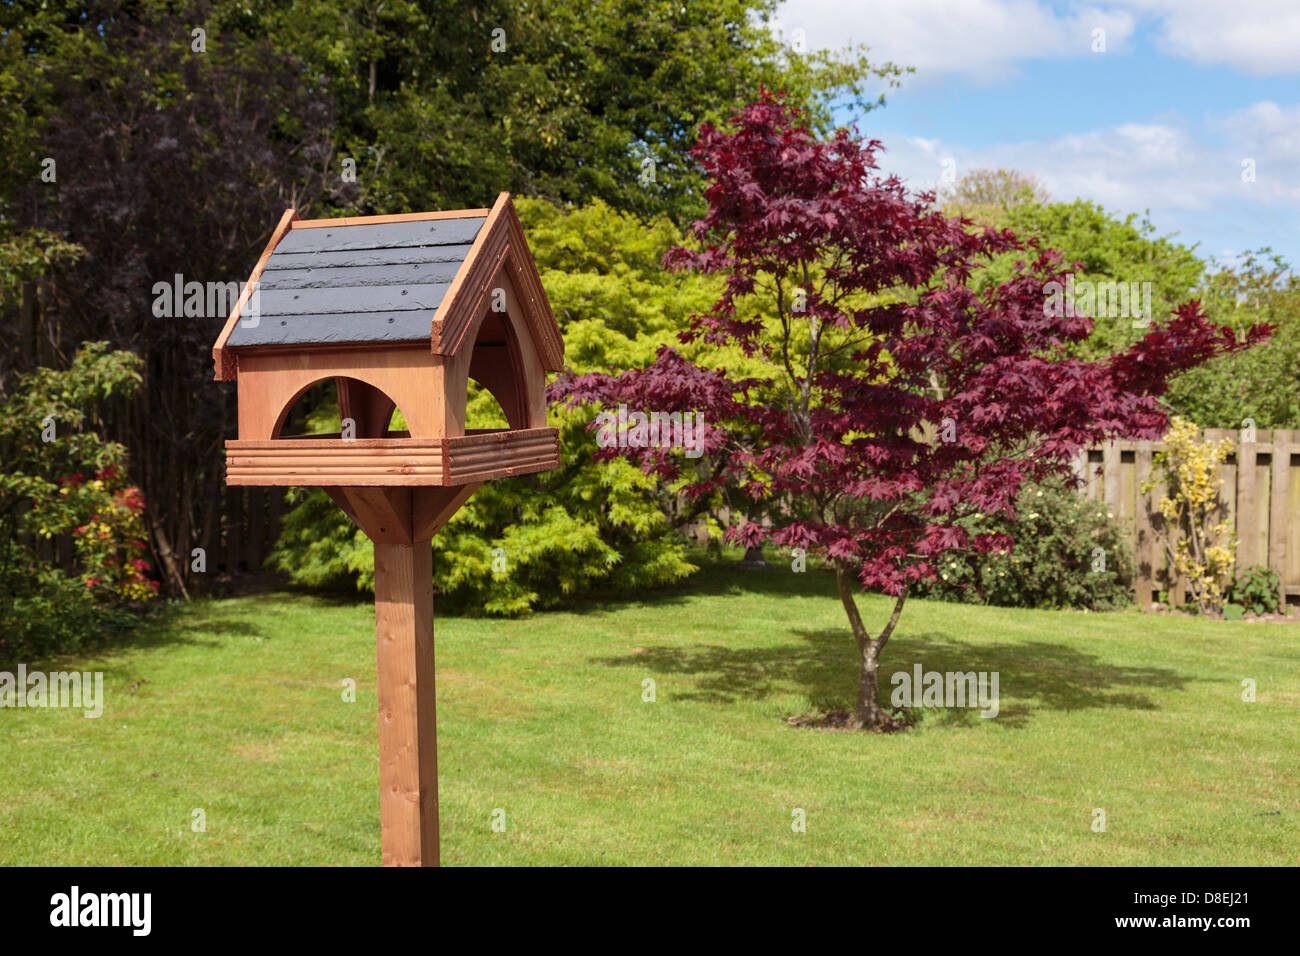 Holz- Vogel Tabelle mit Schieferdach und ein Acer Baum auf einem inländischen zurück Garten Rasen im Sommer Sonnenschein. Großbritannien, Großbritannien Stockfoto